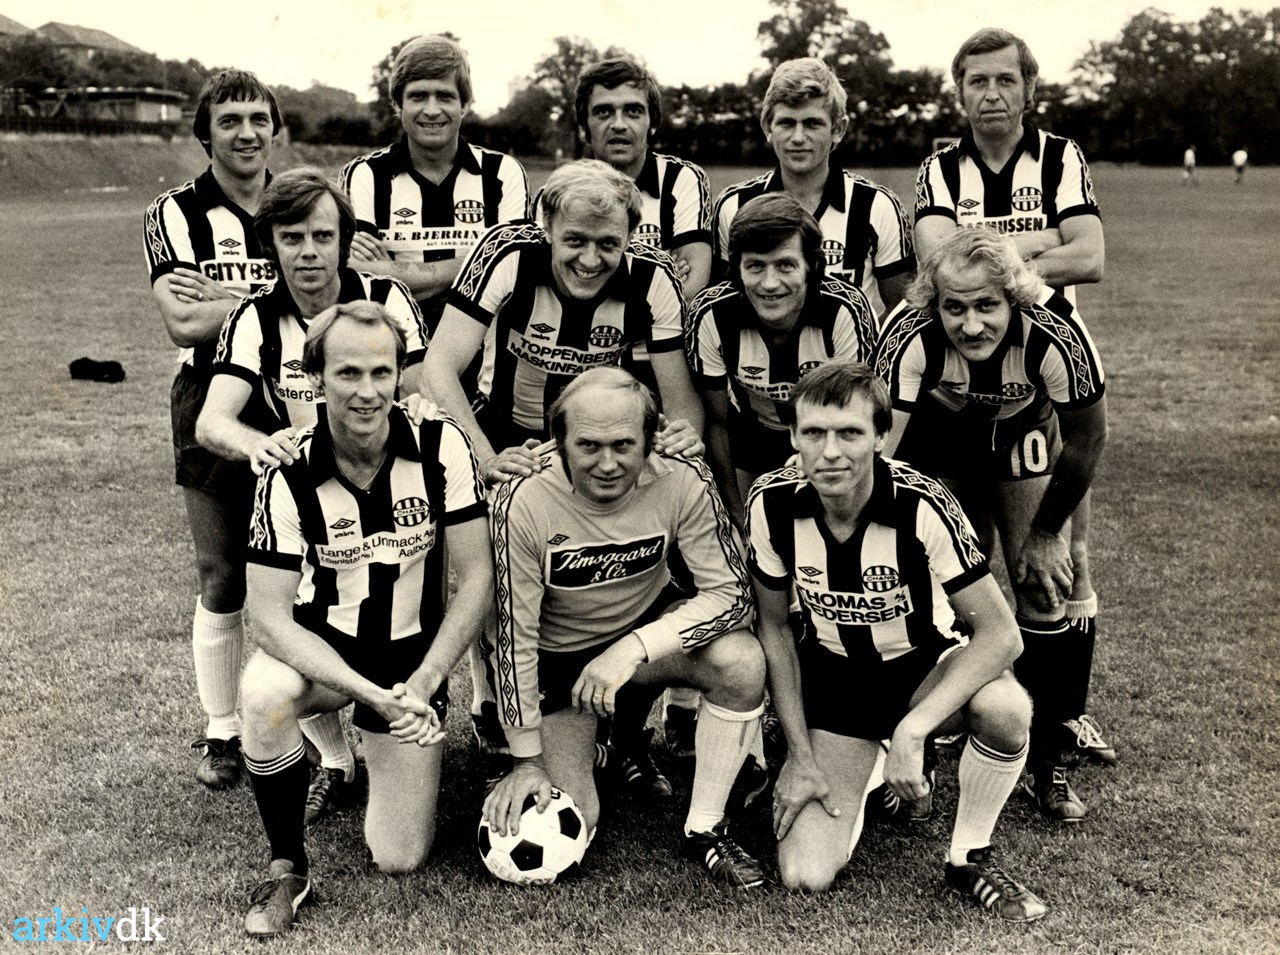 detail brug indendørs arkiv.dk | Idrætsklubben "Chang". Old Boys-hold. År 1979.